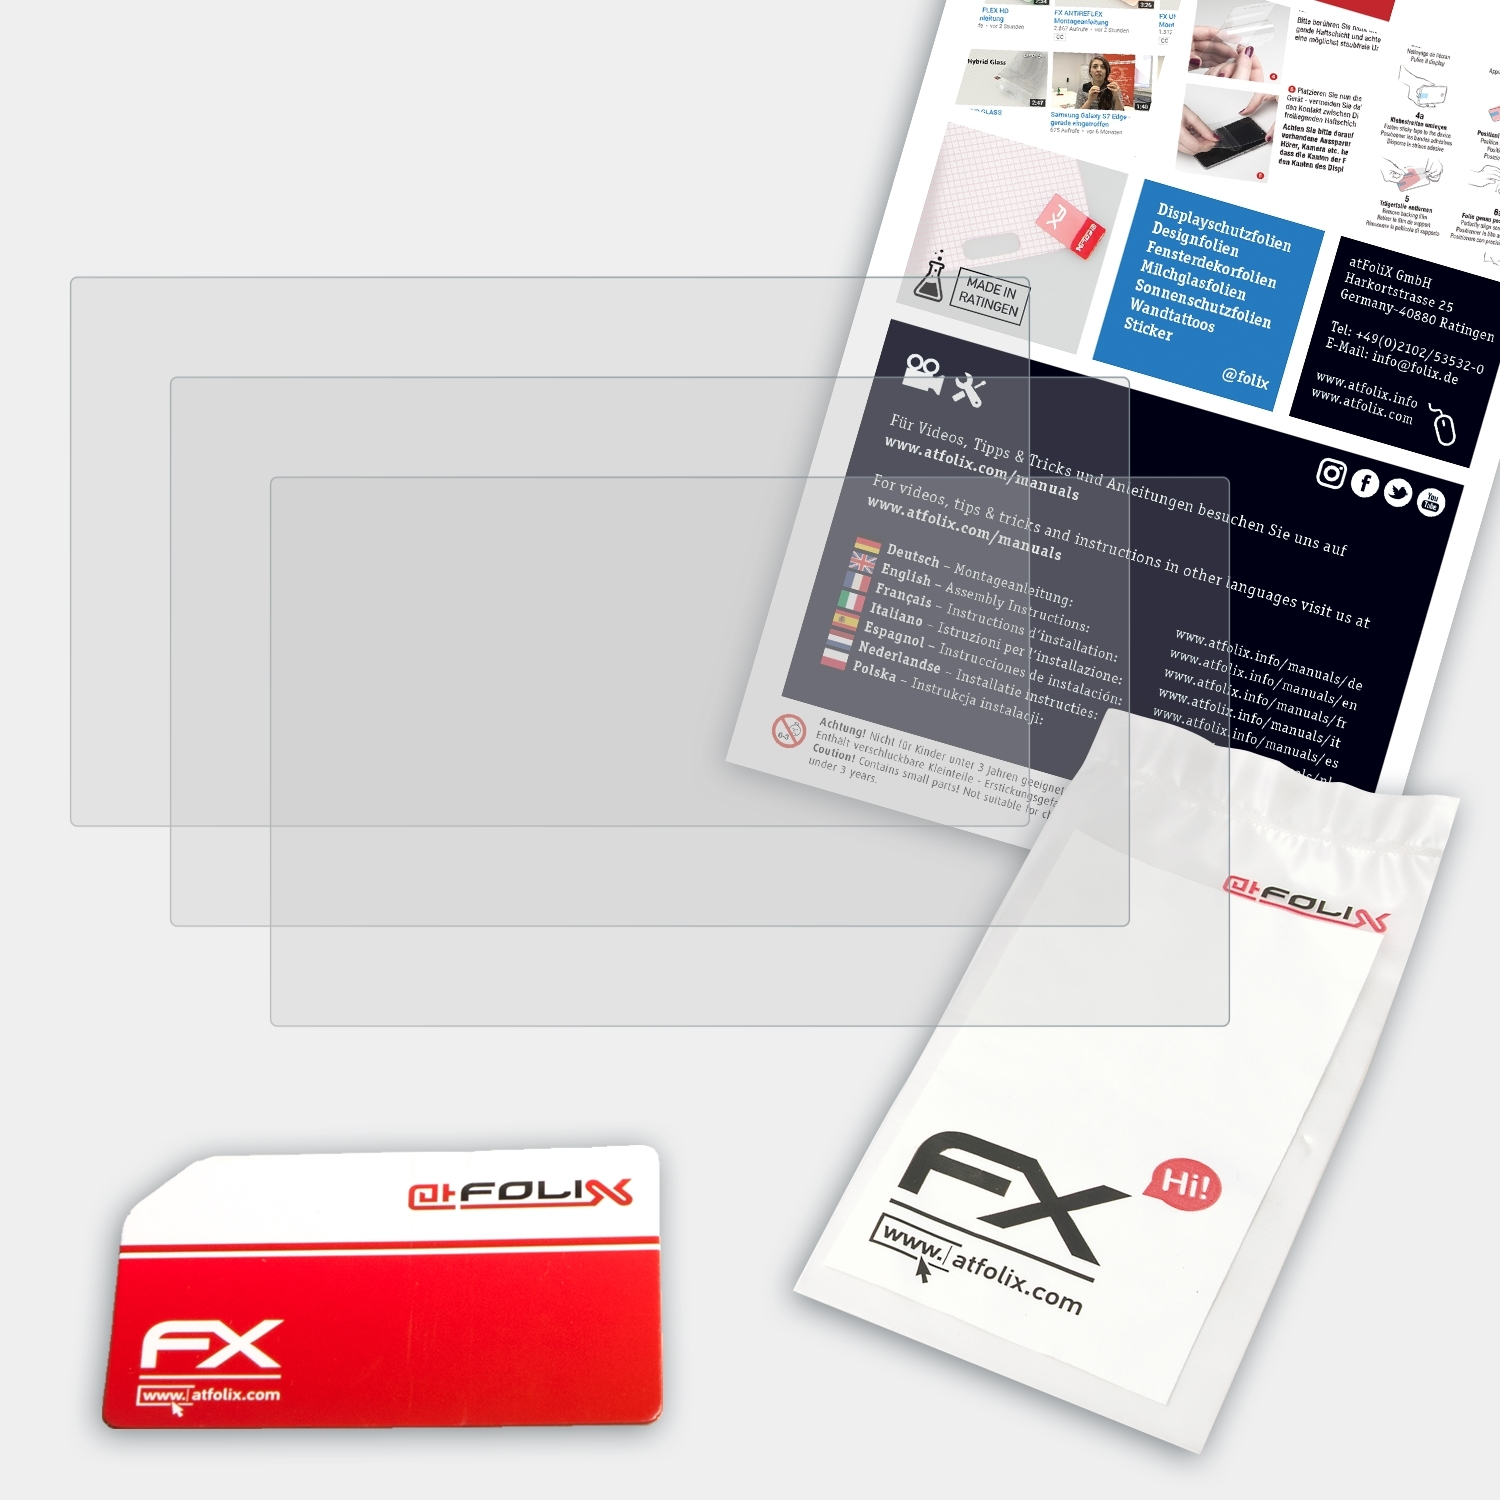 ATFOLIX 3x FX-Antireflex Displayschutz(für TomTom Basic (5 GO inch))